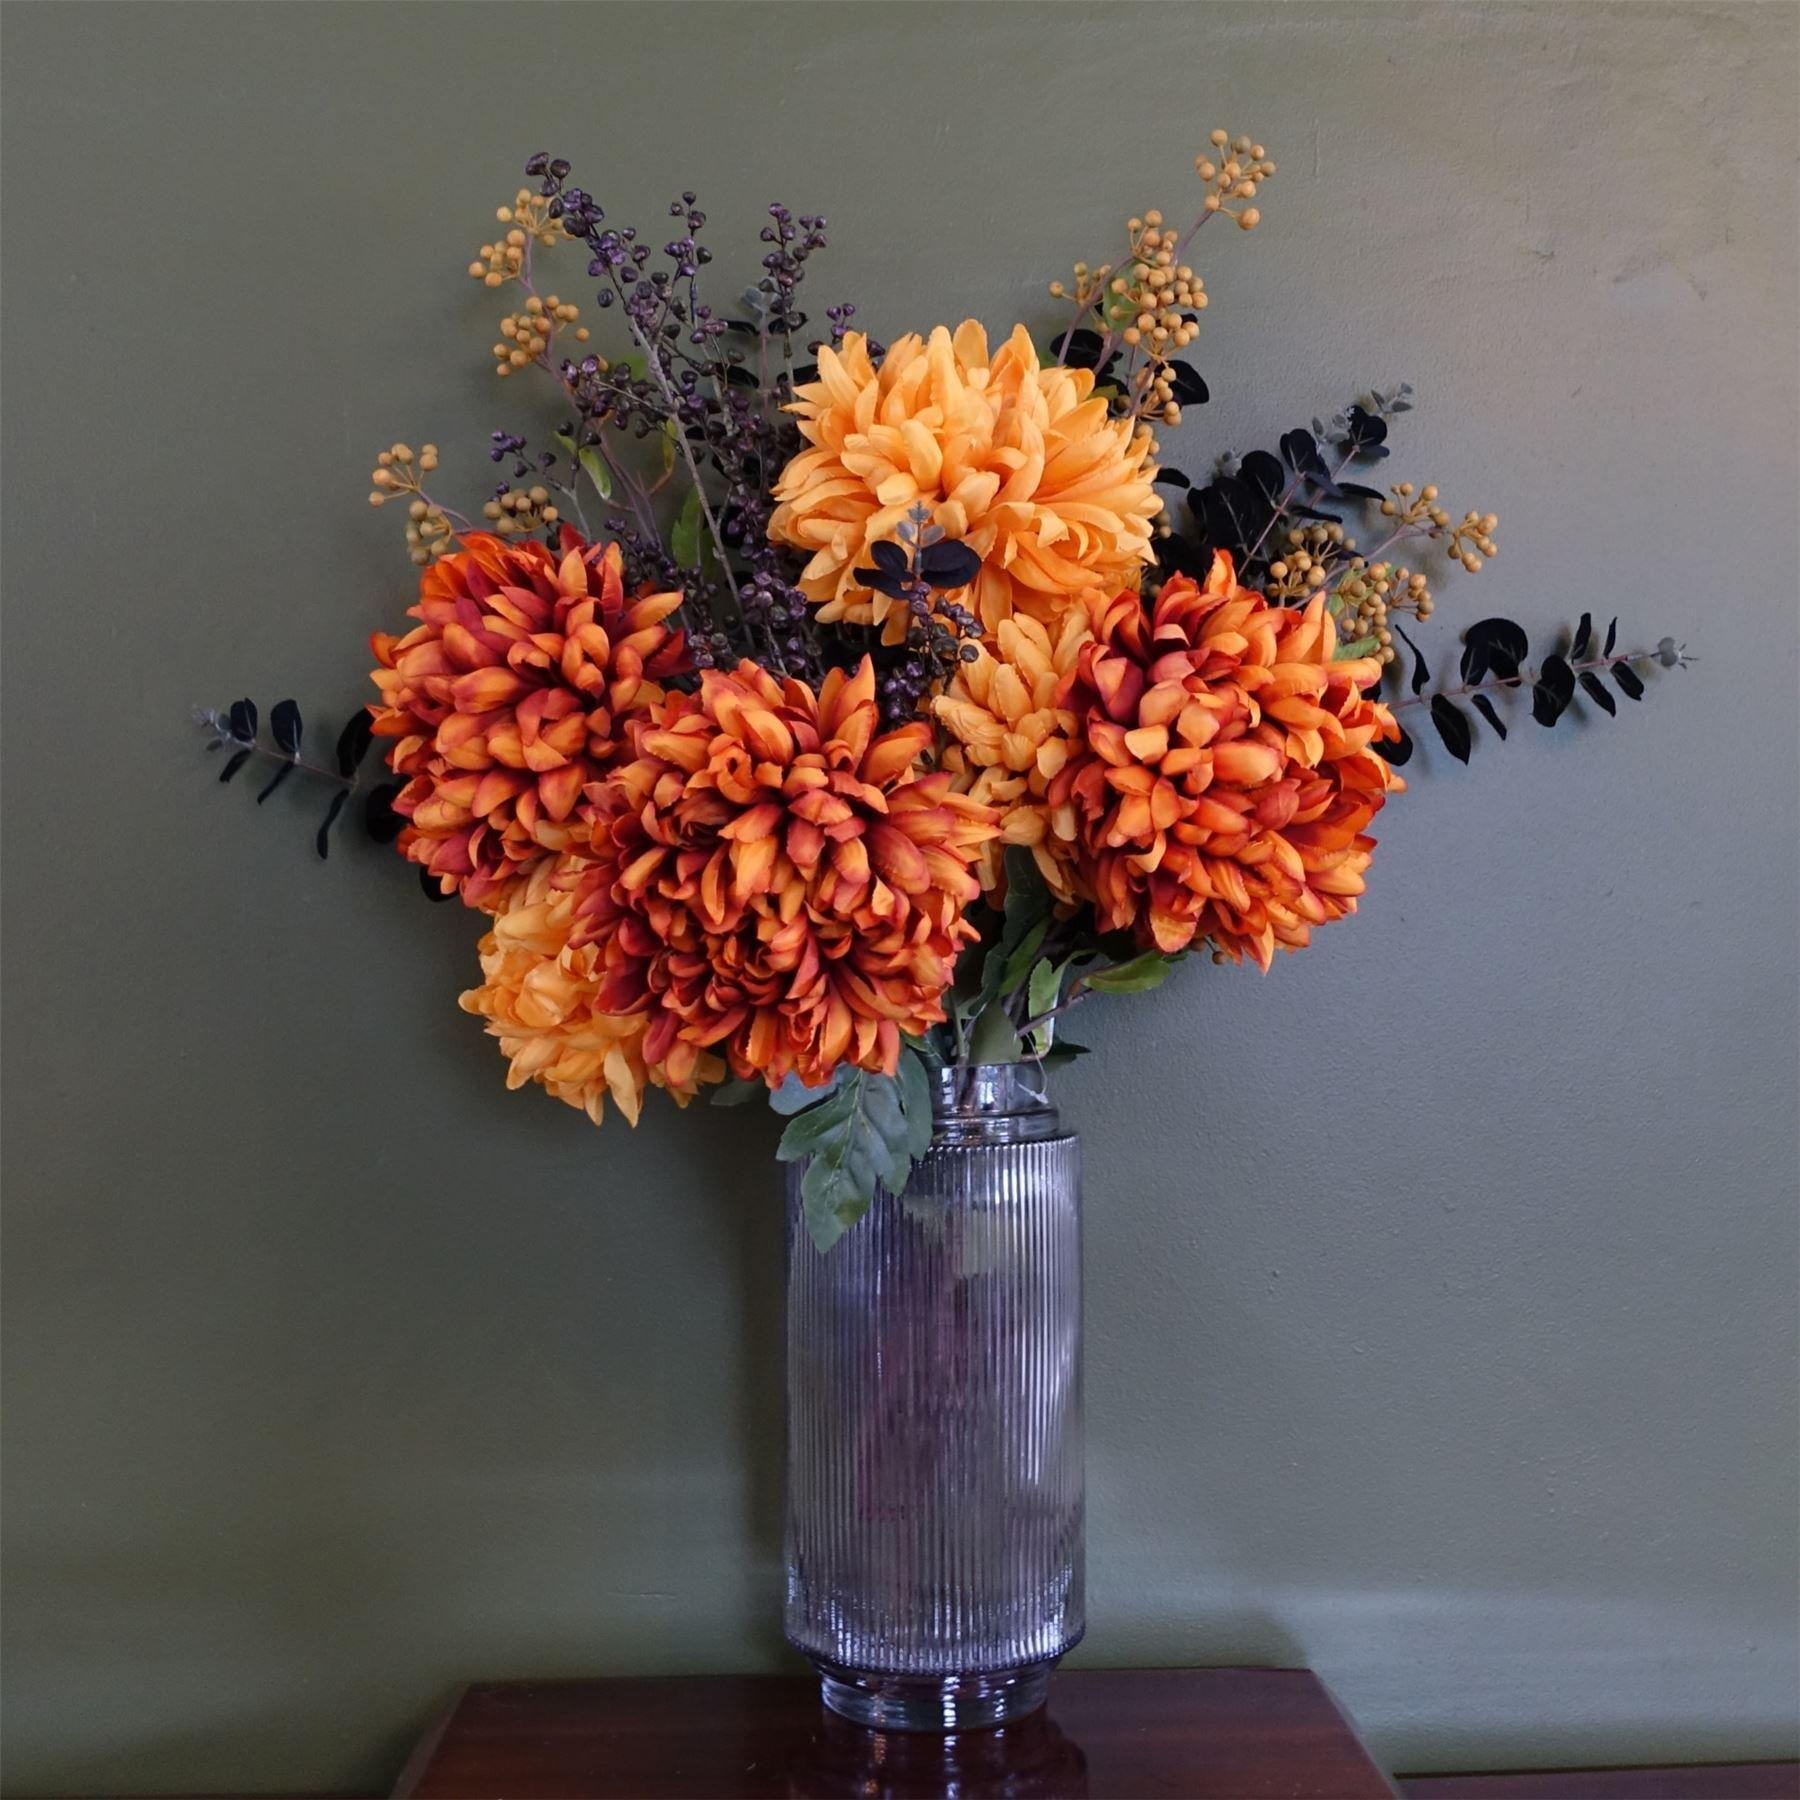 Leaf 65cm Orange and Black Flower Arrangement Glass Vase - image 1